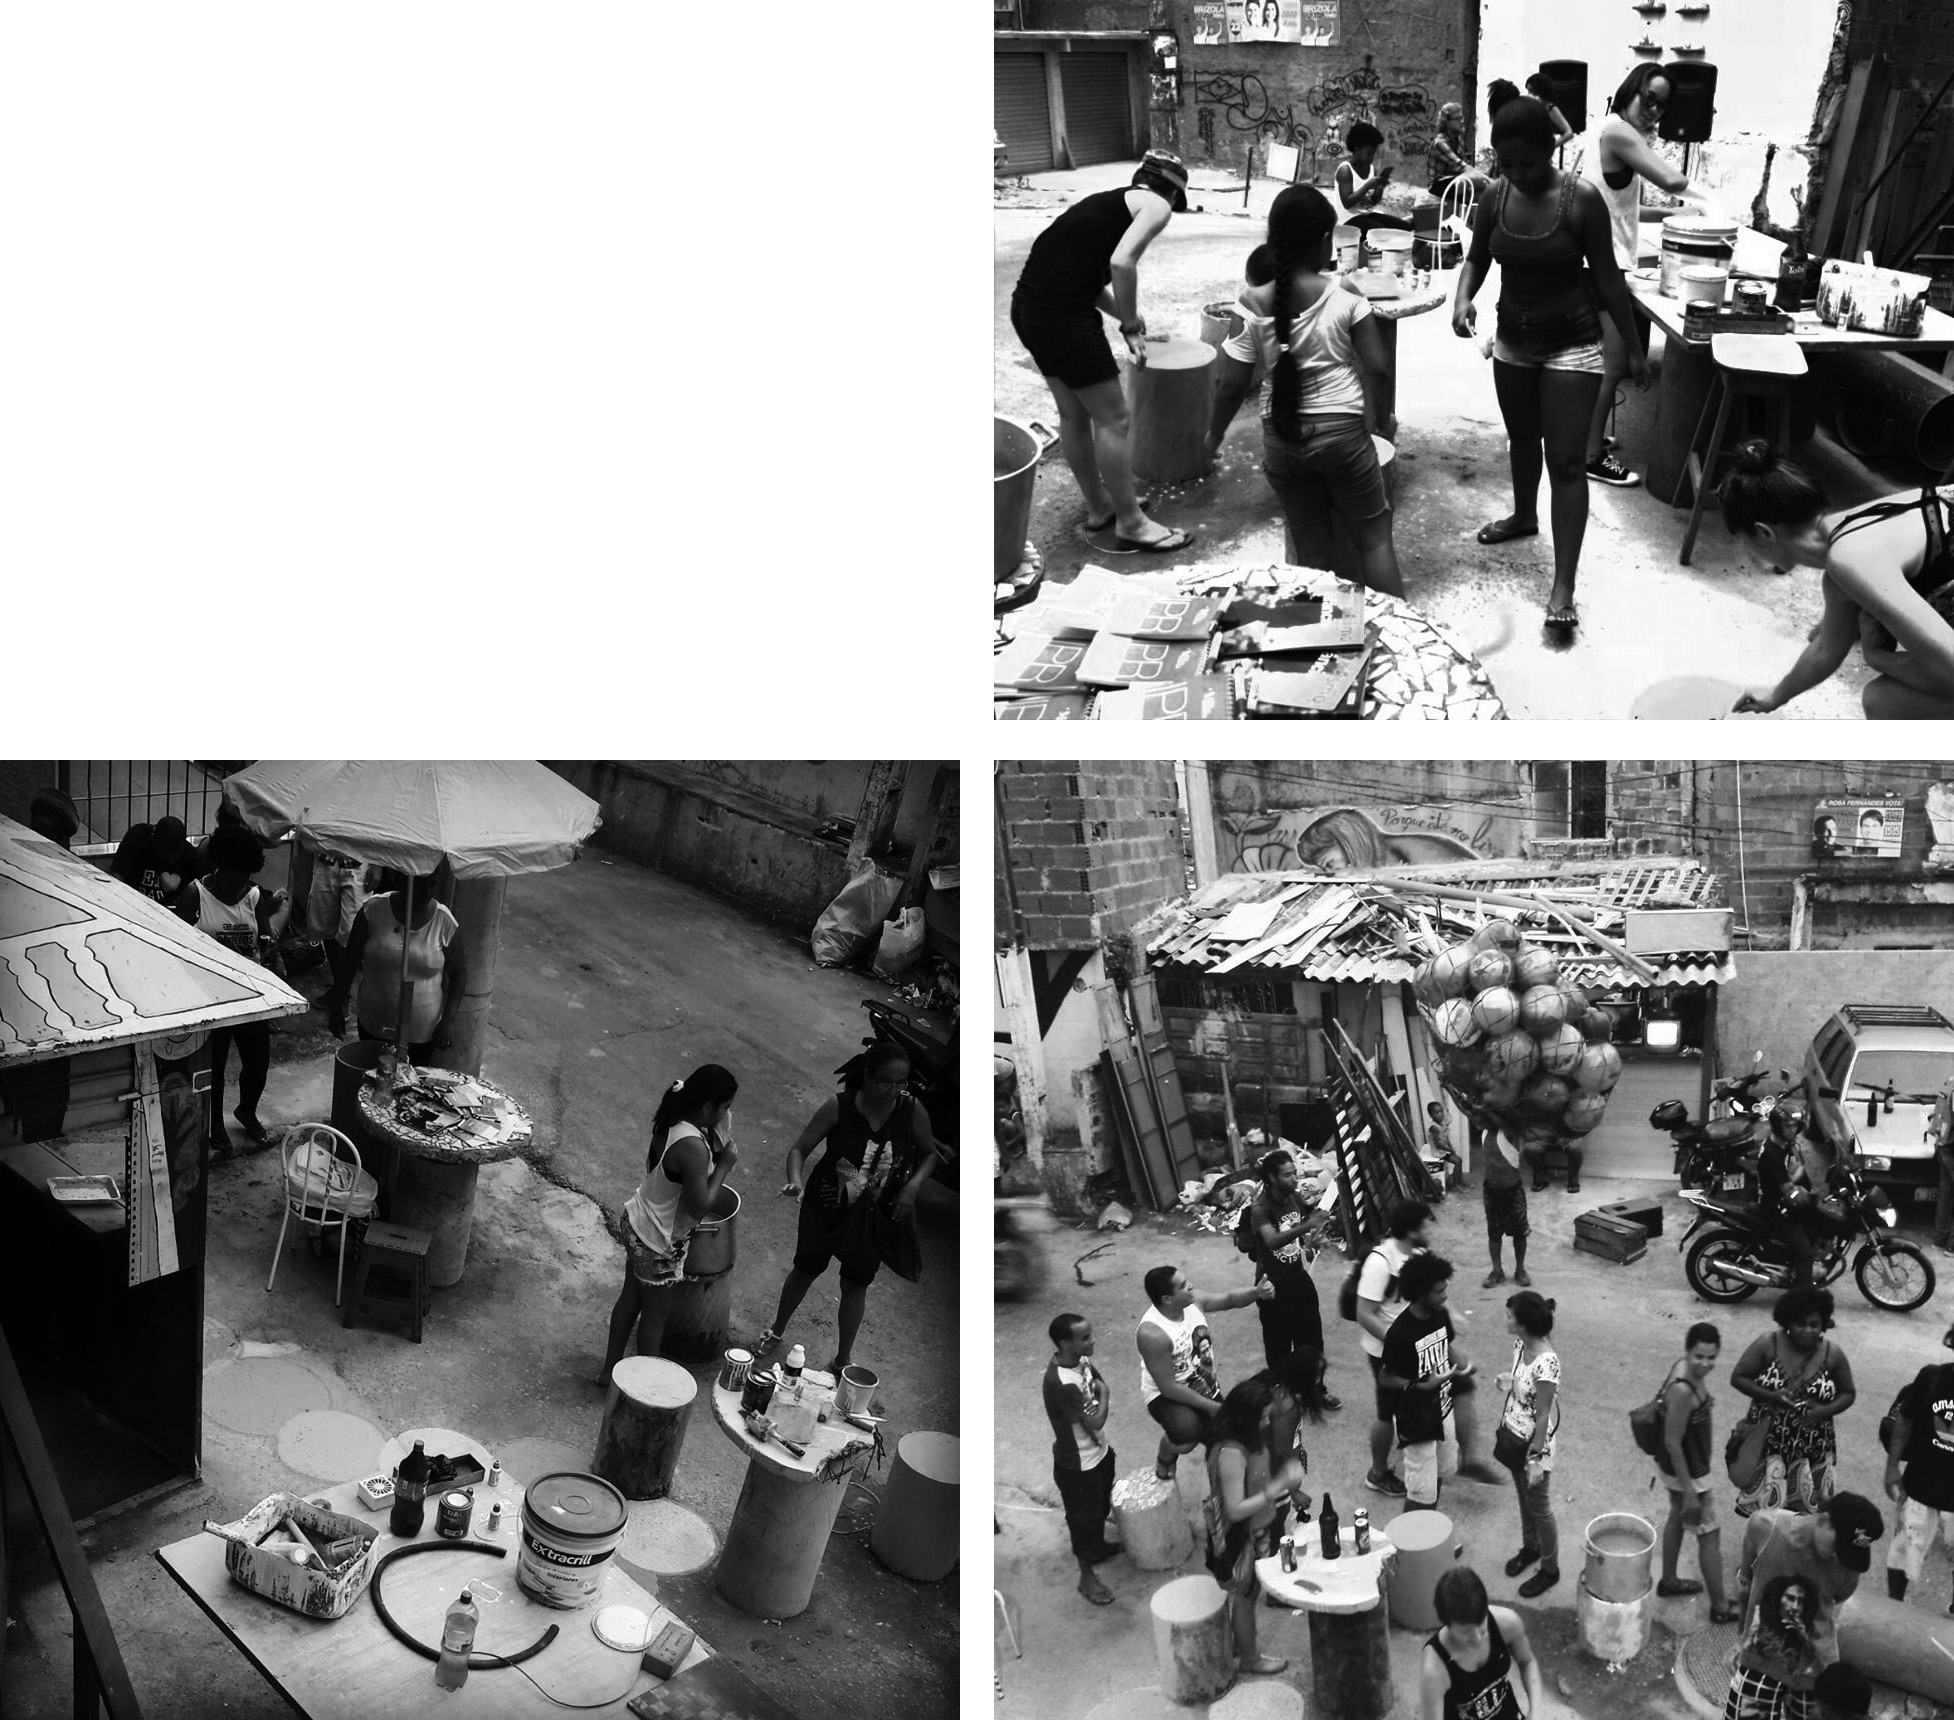 Foto preta e branca de pessoas ao redor de uma mesa

Descrição gerada automaticamente